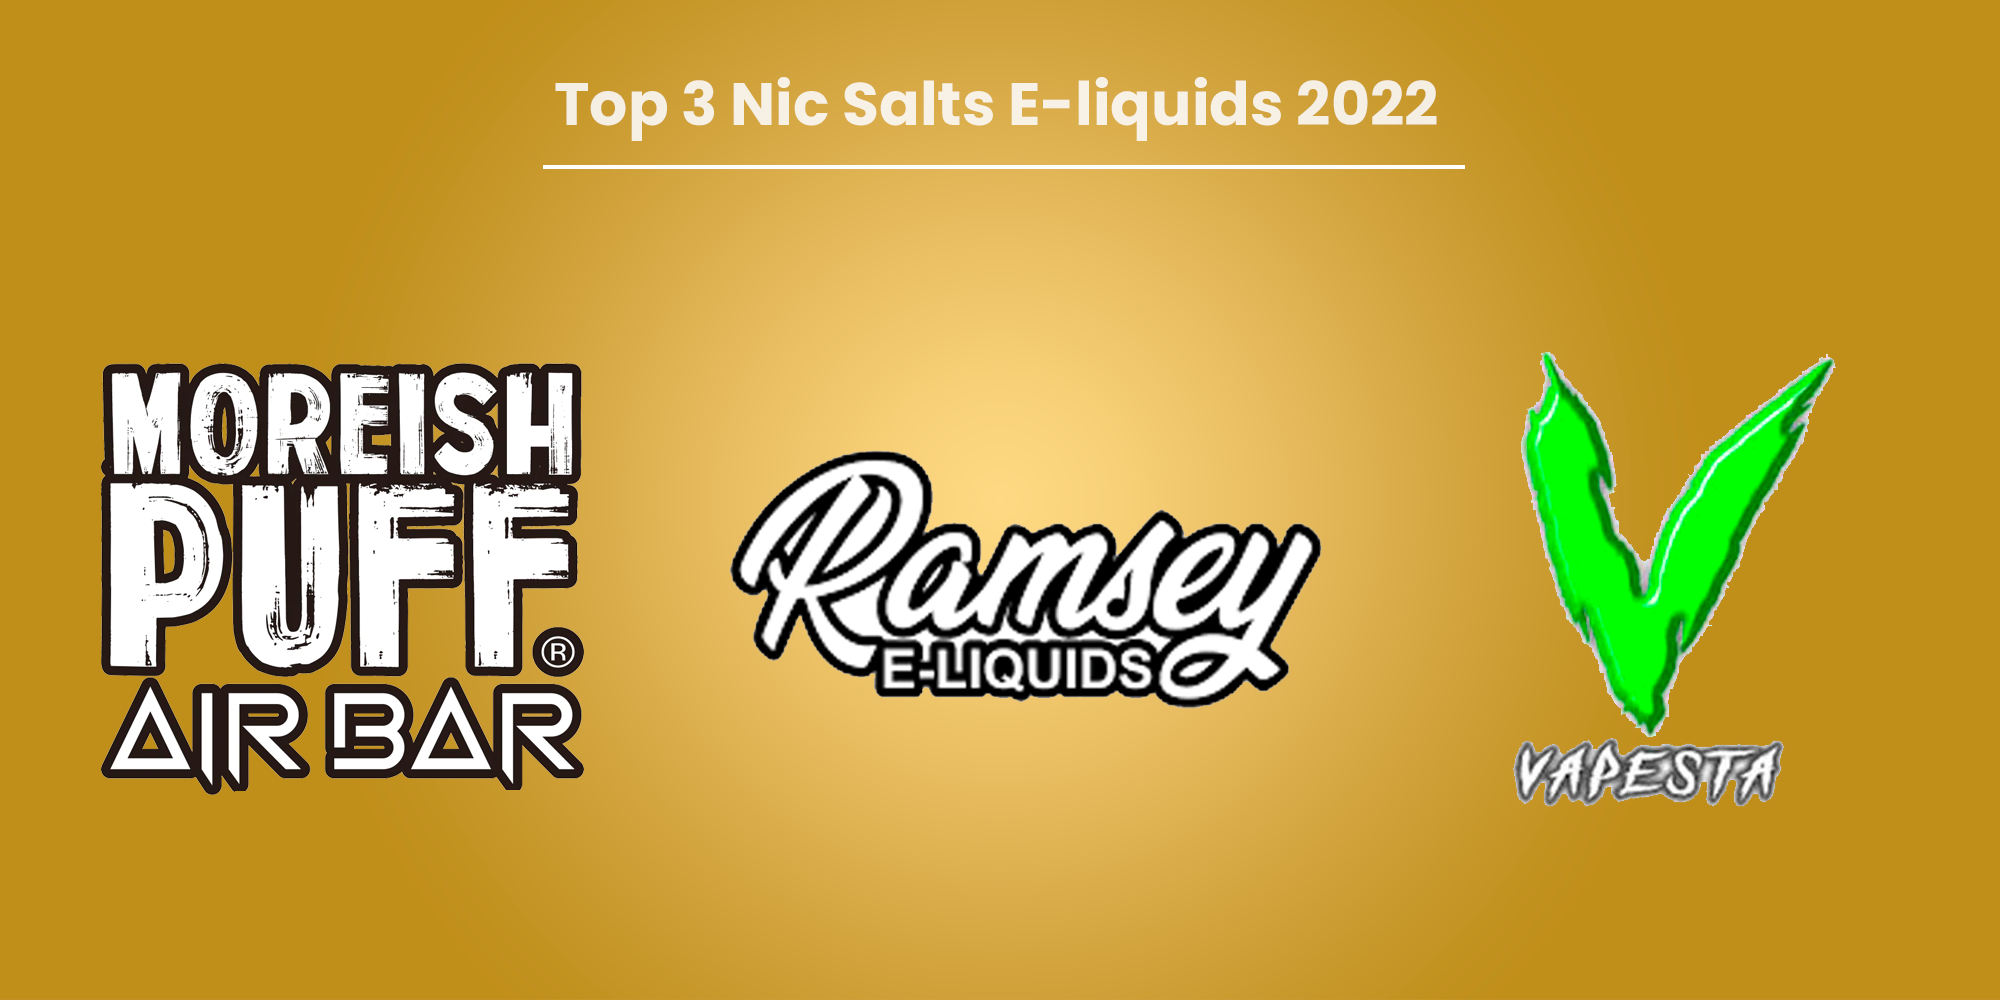 Top 3 Nic Salts E-liquids 2022 